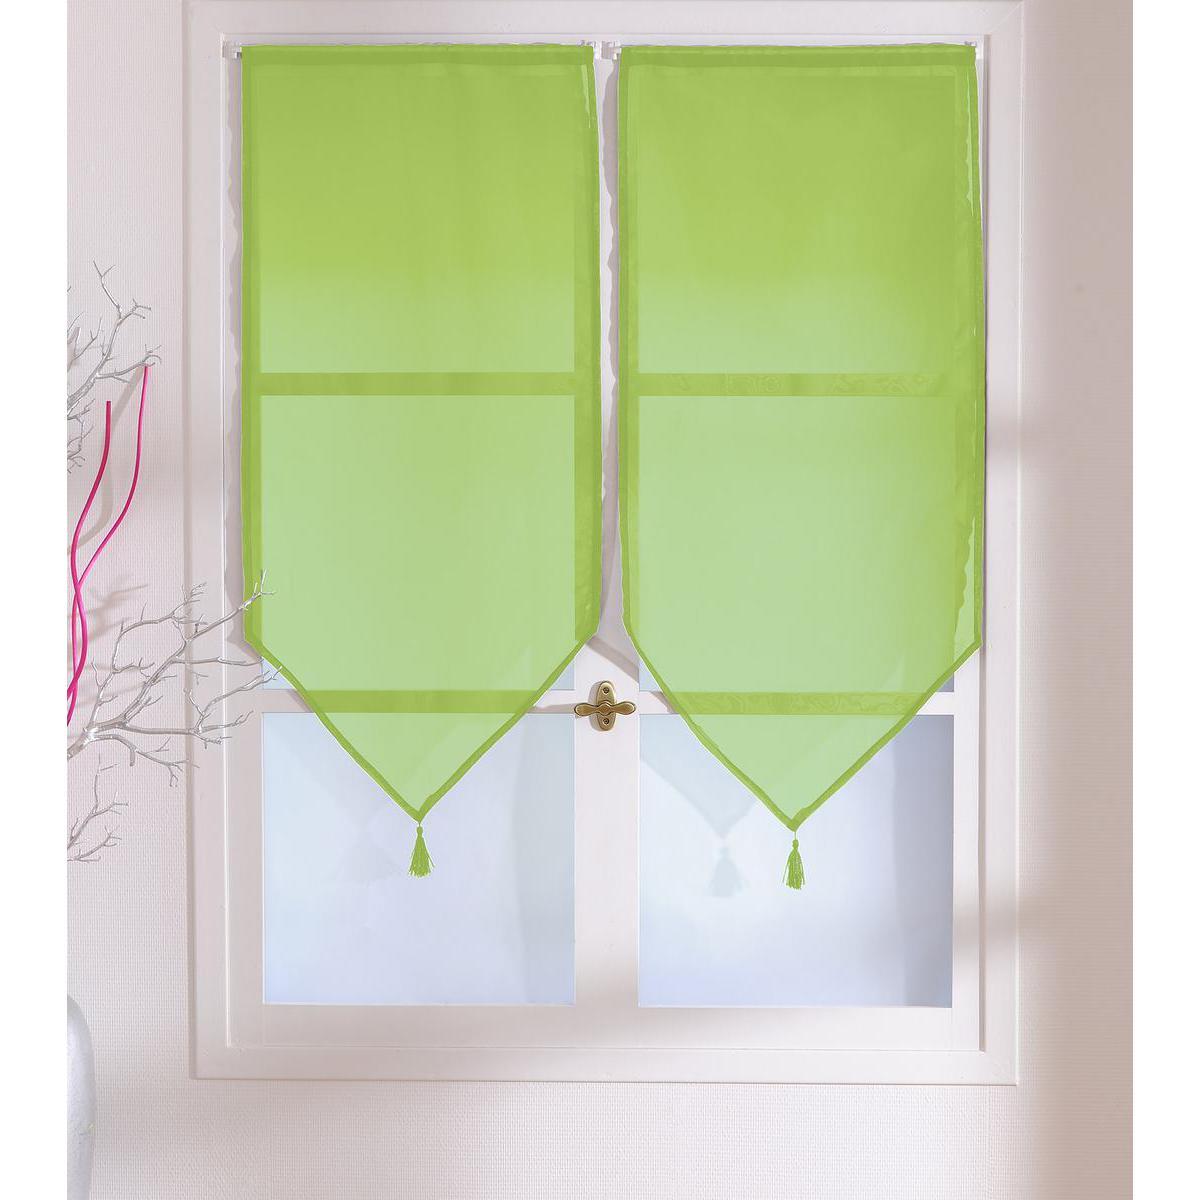 Paire de vitrages - 100% polyester - 60 x 90 cm - Vert